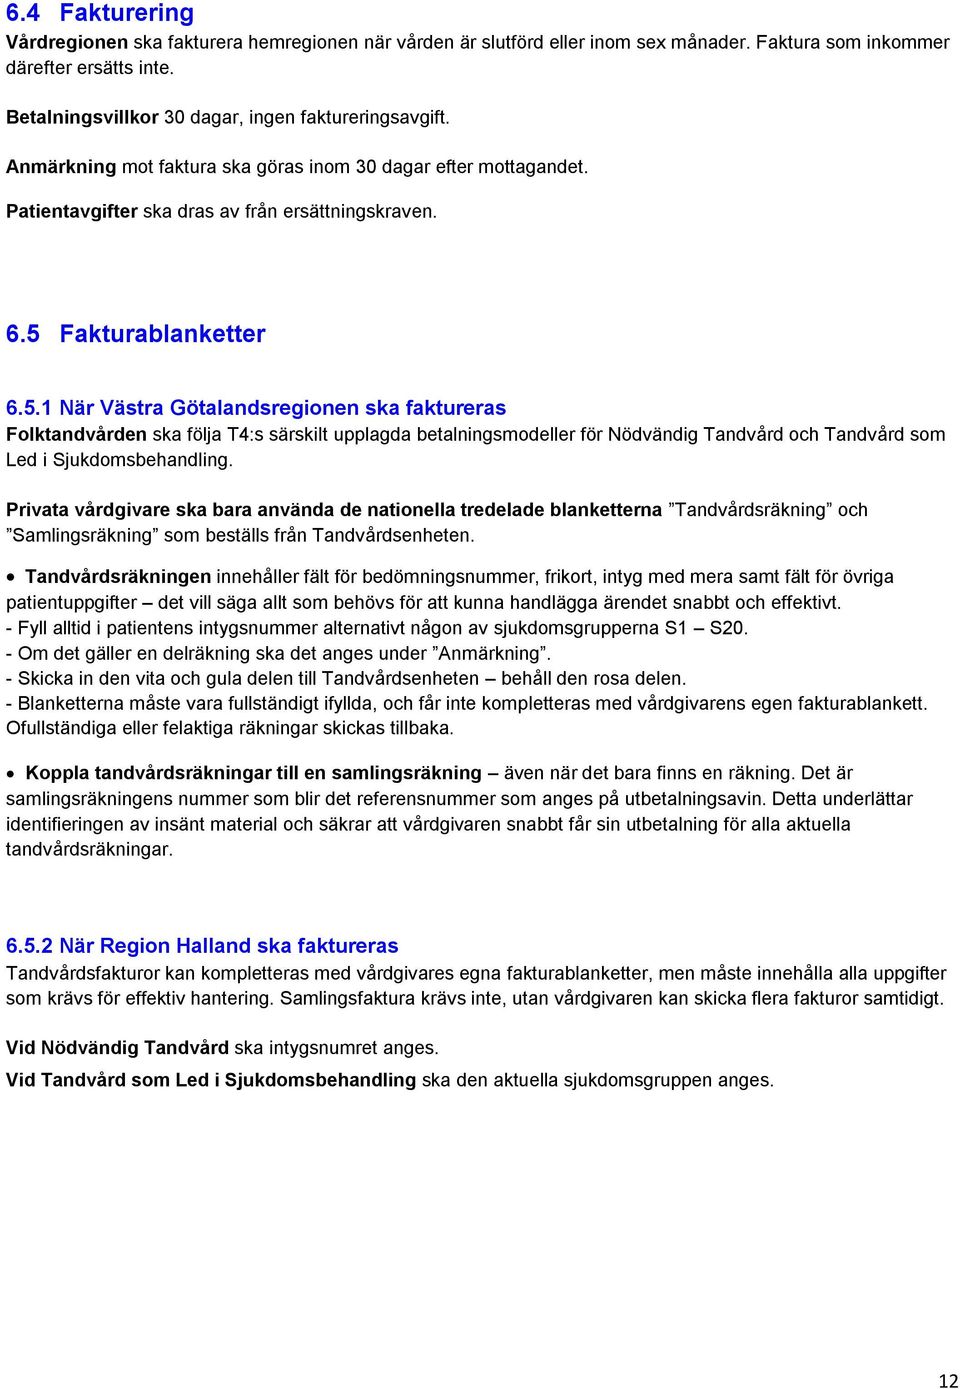 Fakturablanketter 6.5.1 När Västra Götalandsregionen ska faktureras Folktandvården ska följa T4:s särskilt upplagda betalningsmodeller för Nödvändig Tandvård och Tandvård som Led i Sjukdomsbehandling.